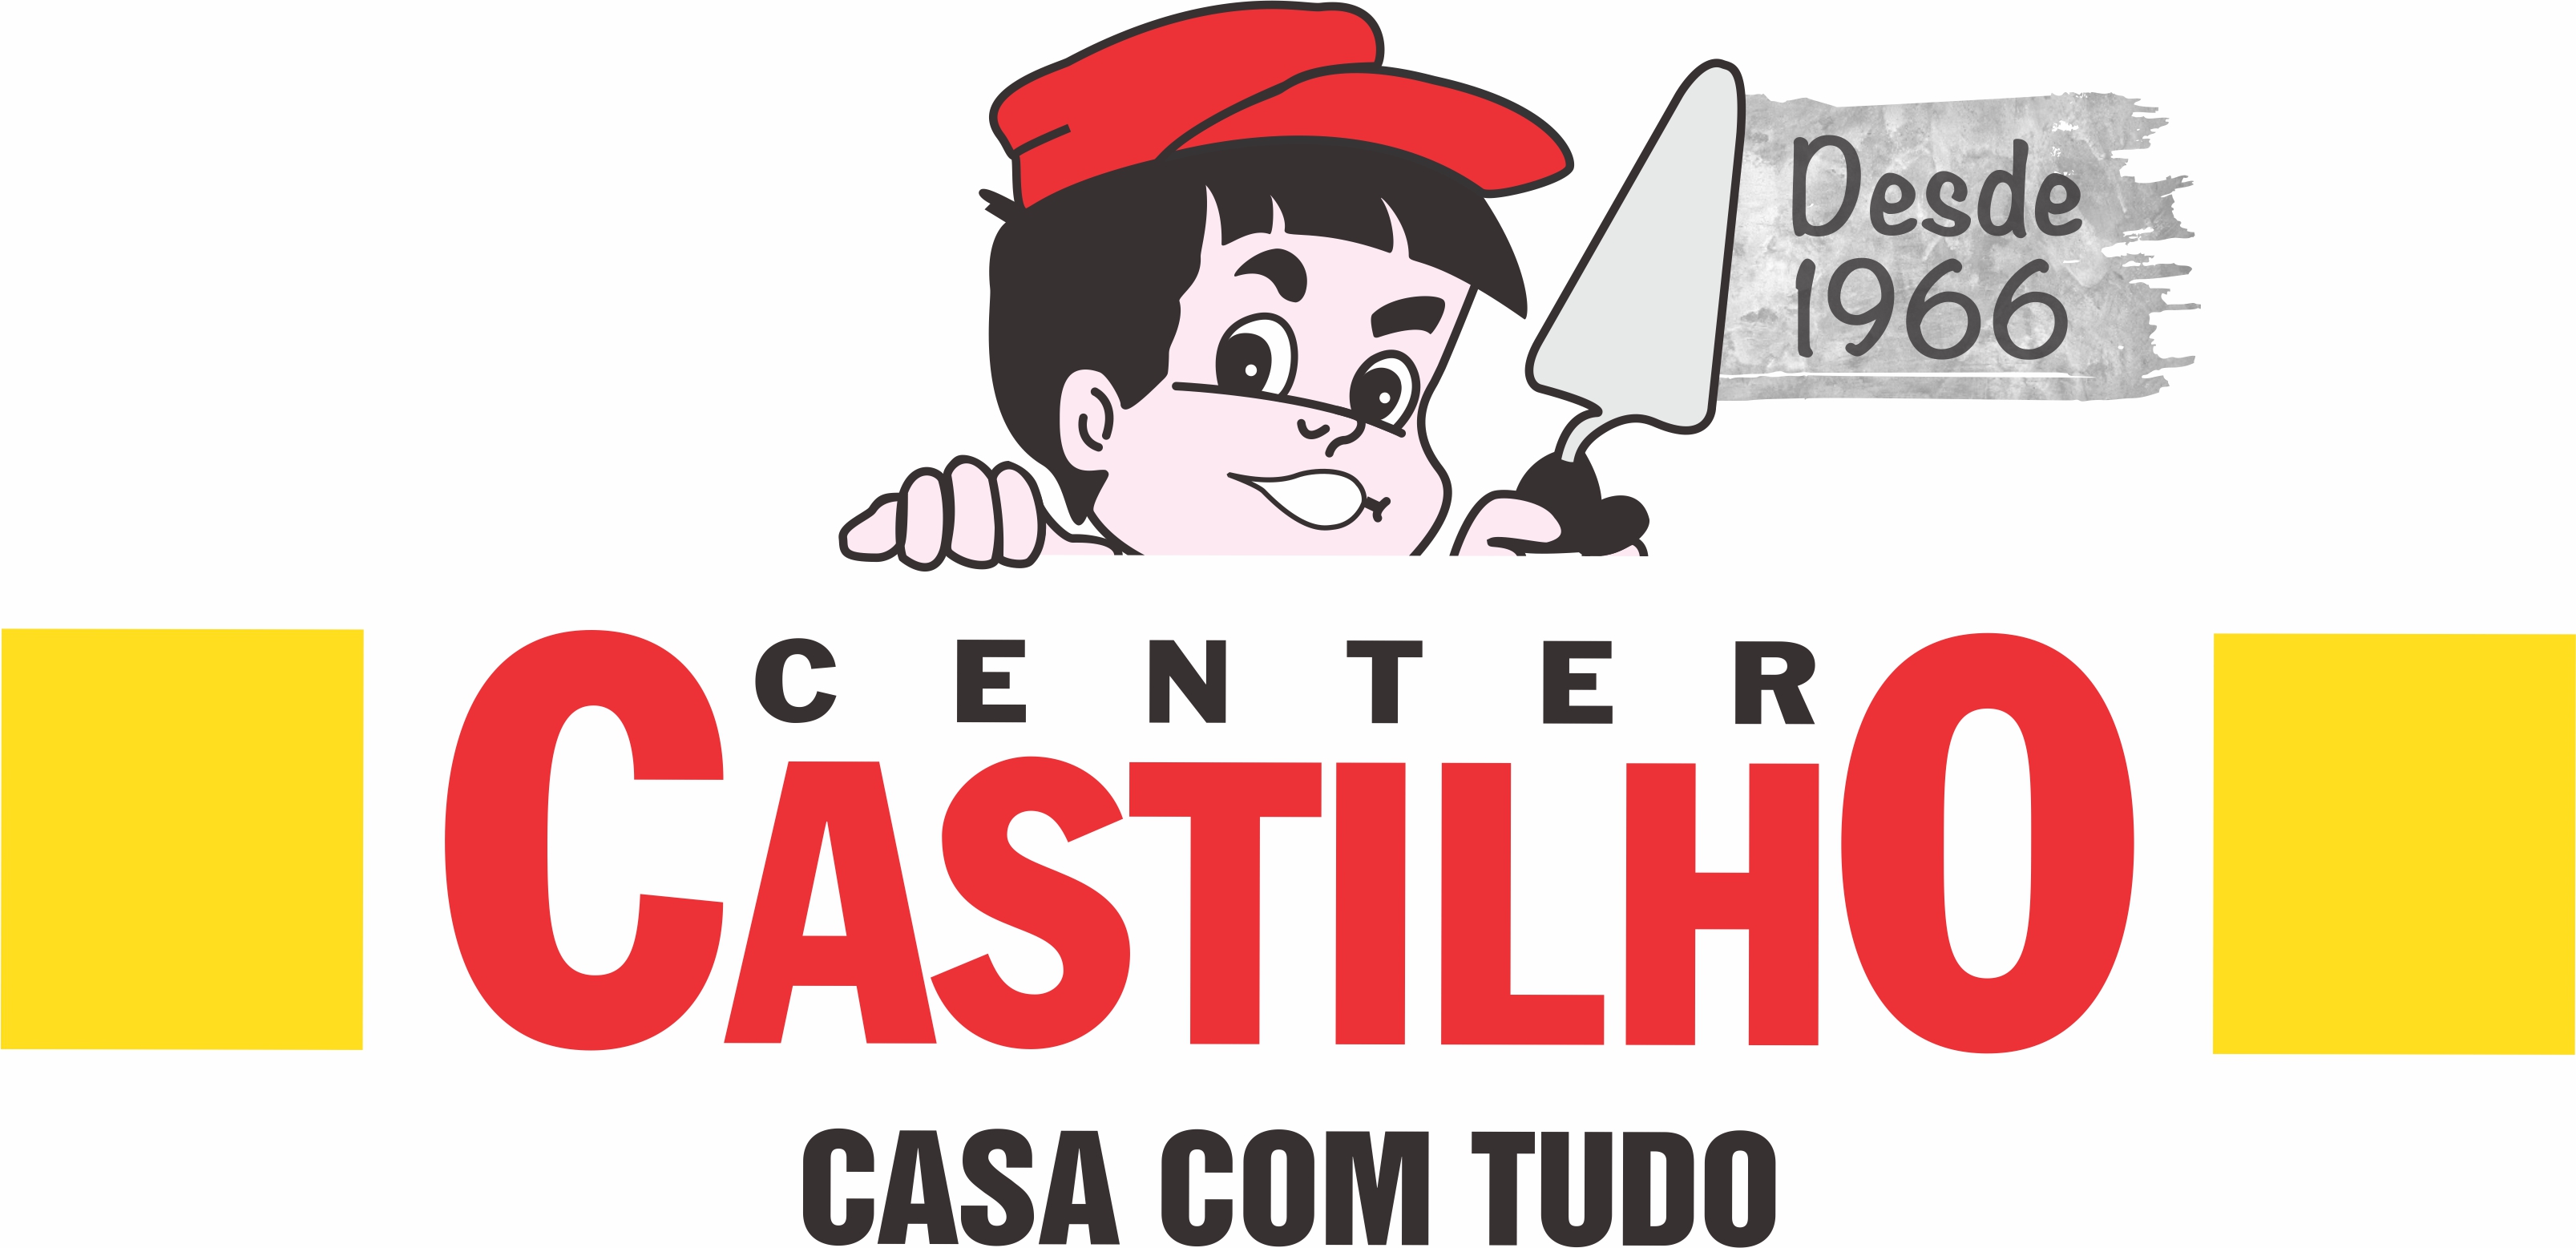 CENTER CASTILHO - São Bernardo do Campo, SP